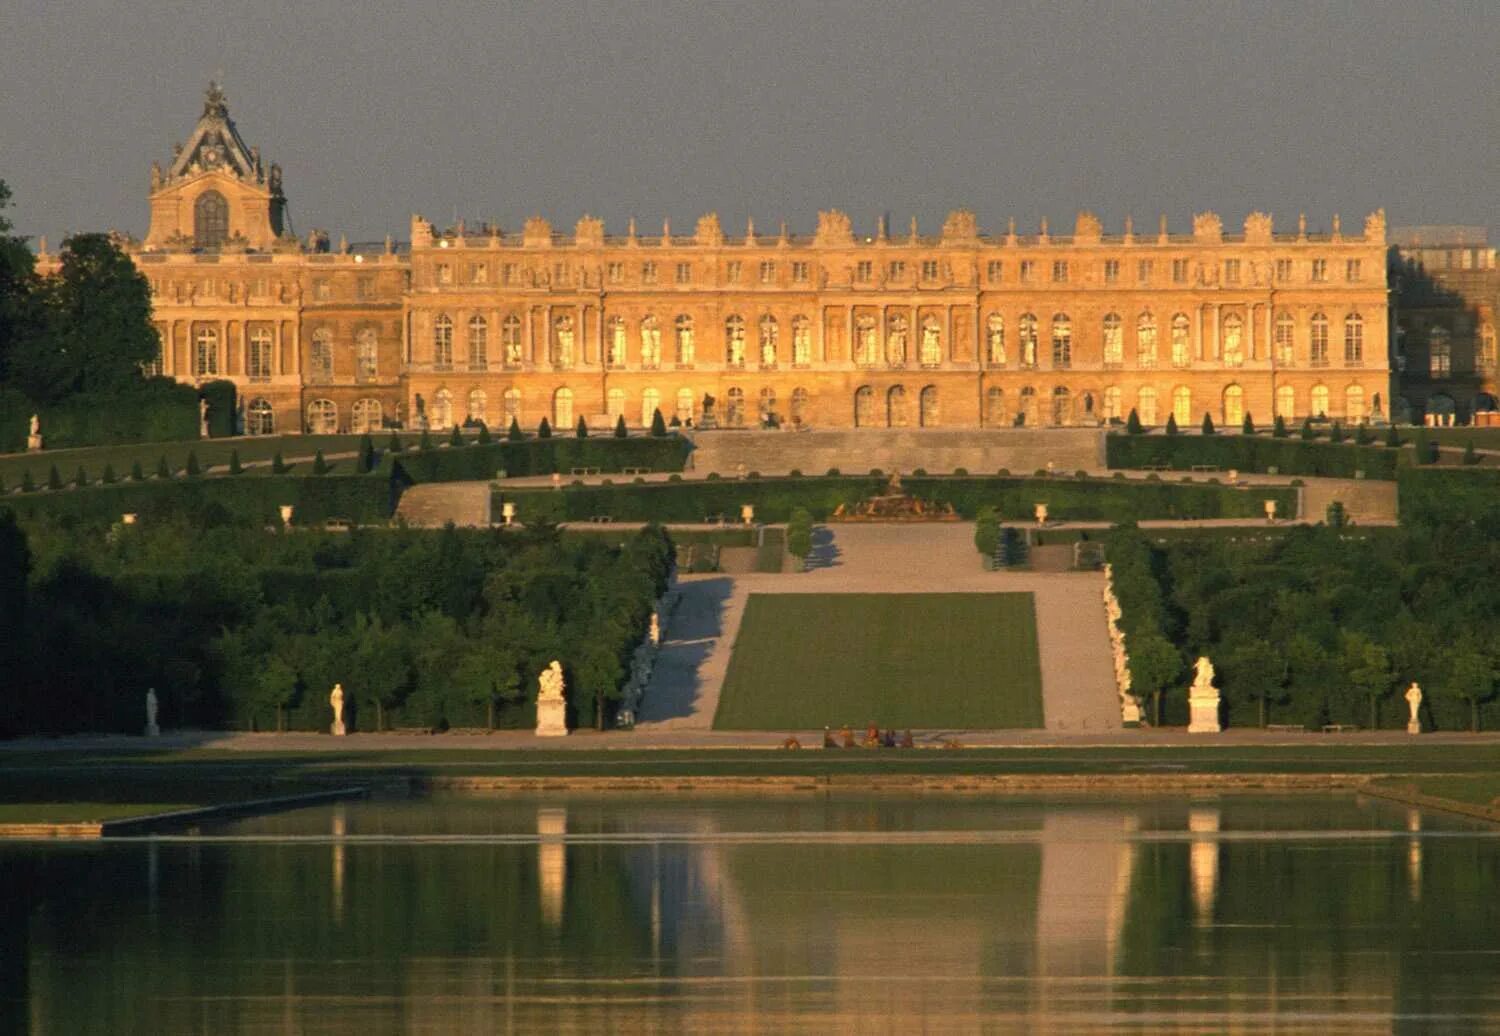 Версаль билеты. Версальский дворец Версаль Франция. Королевский дворец в Версале. Версаль дворец французских королей. Дворцово-парковый комплекс Версаль (Париж, Франция).